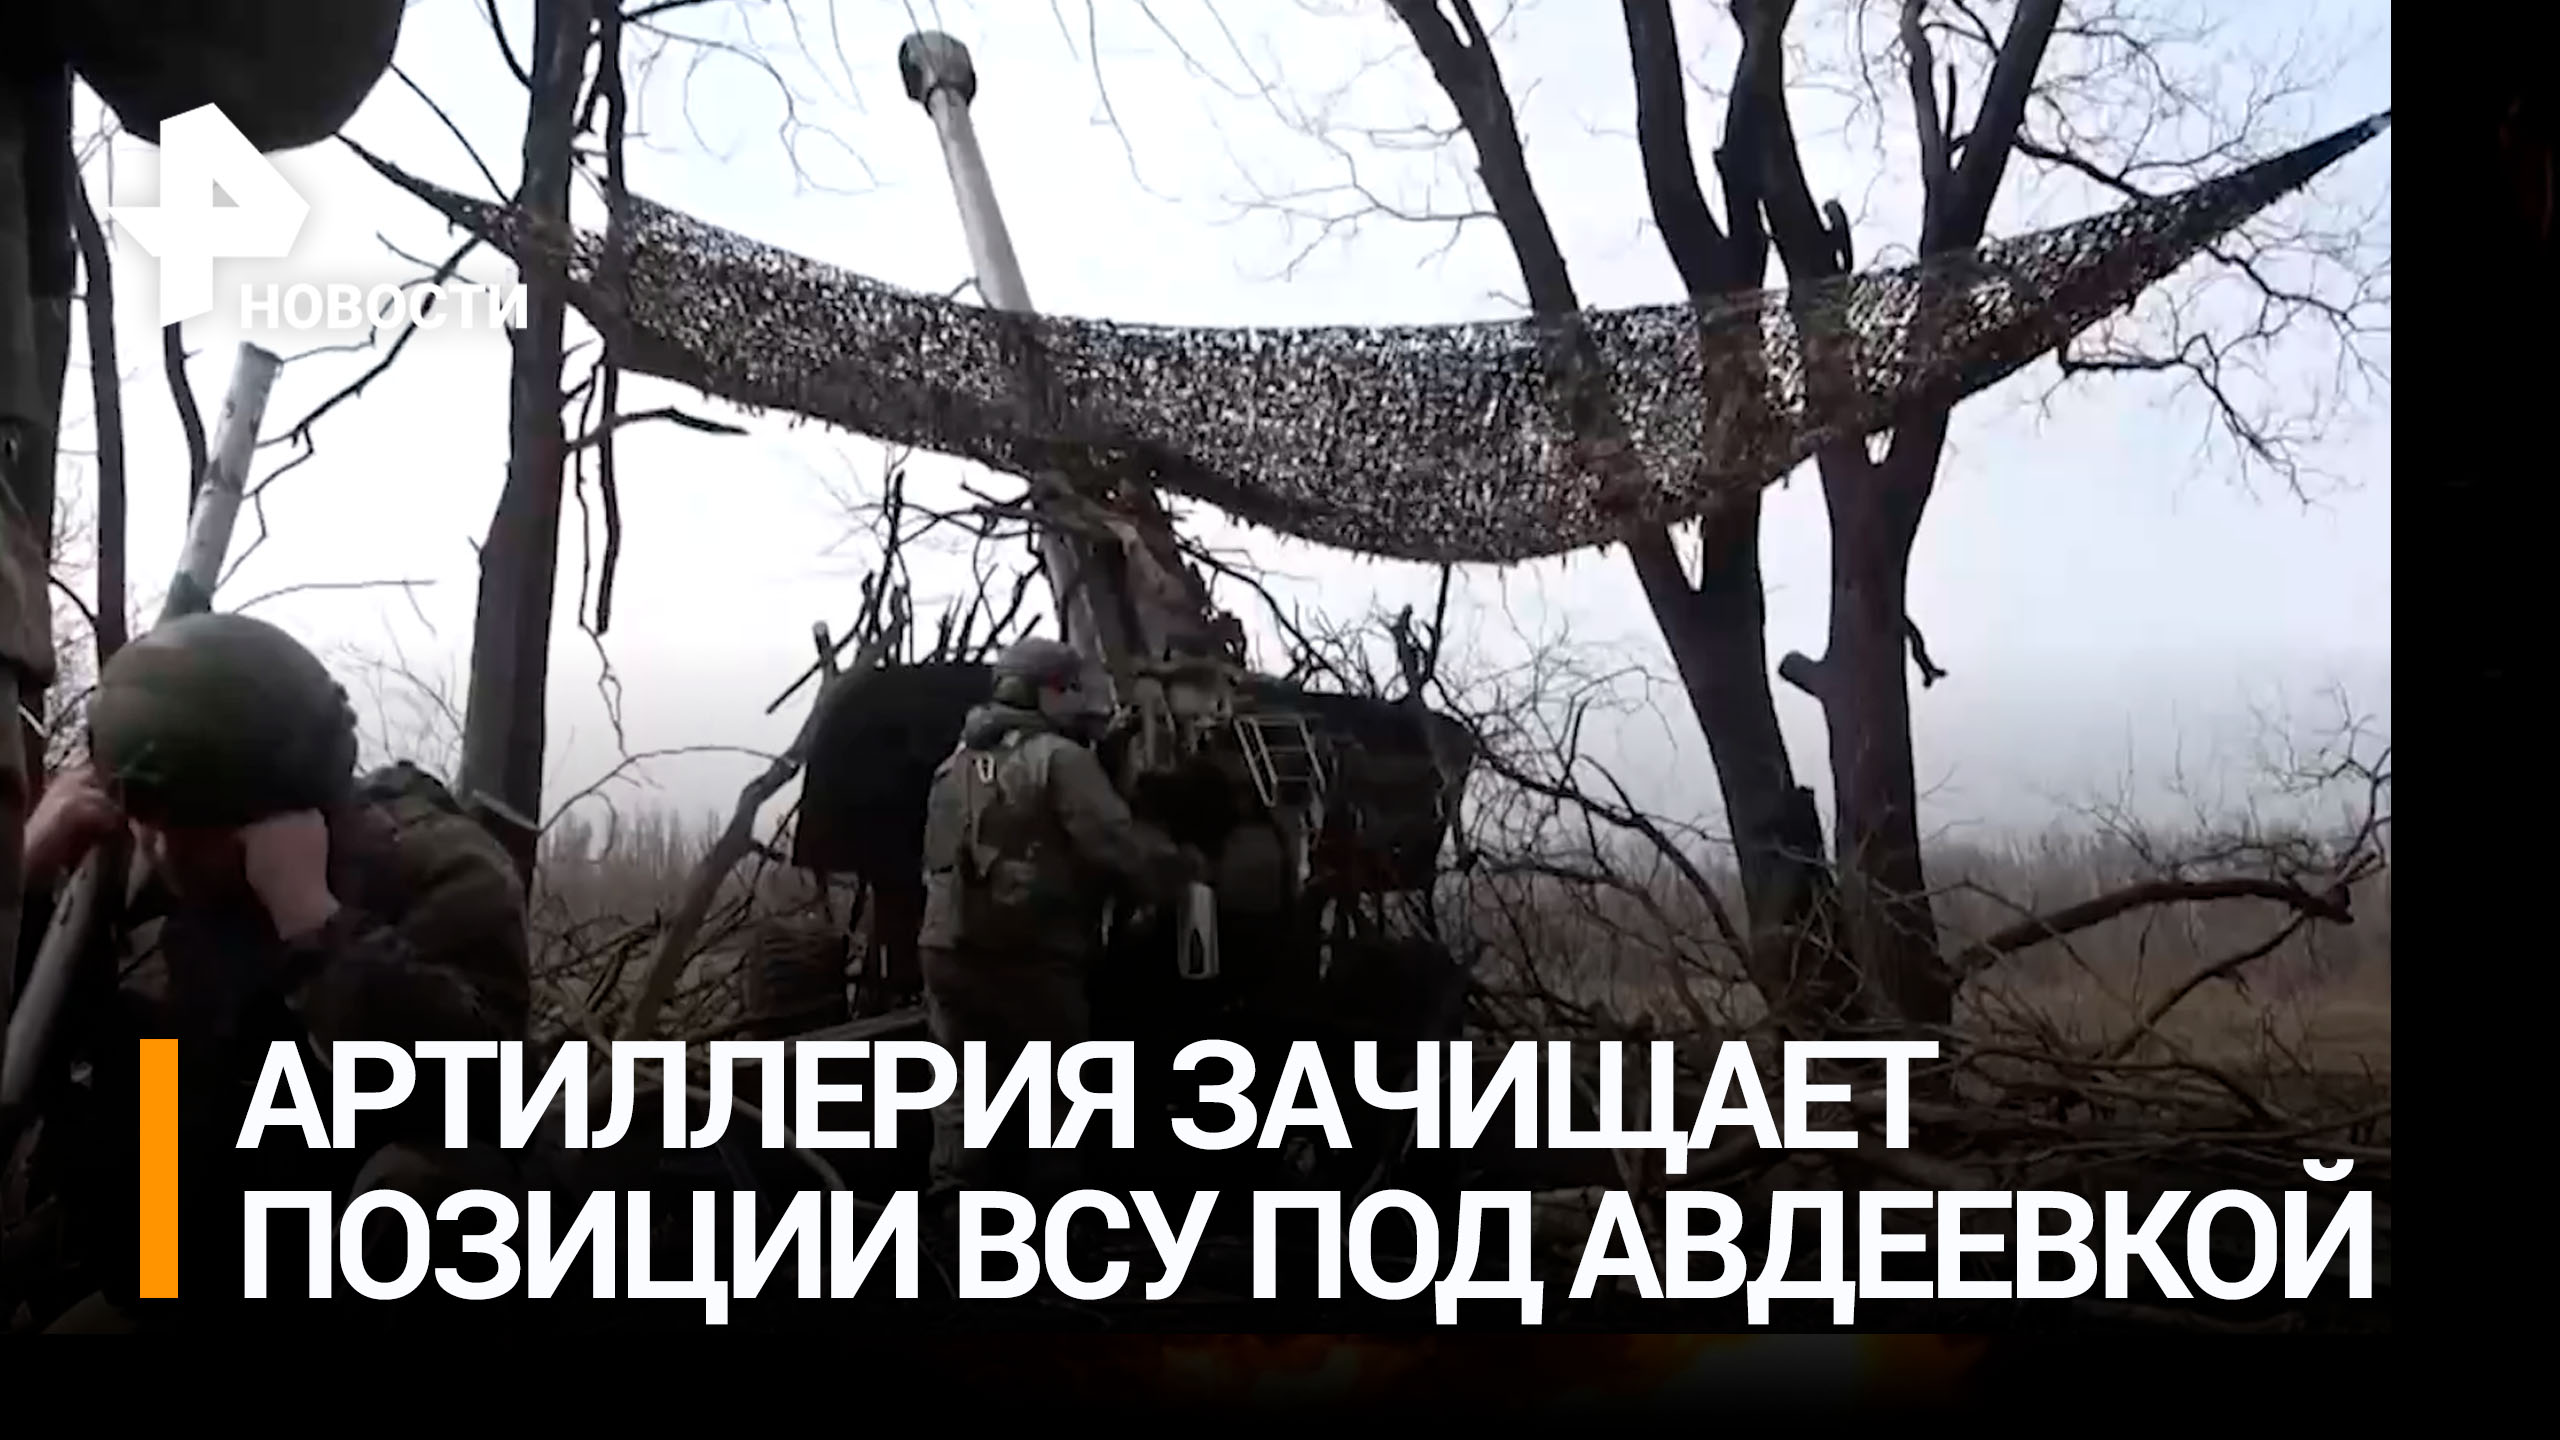 Артиллеристы точными ударами уничтожают позиции ВСУ под Авдеевкой / РЕН Новости